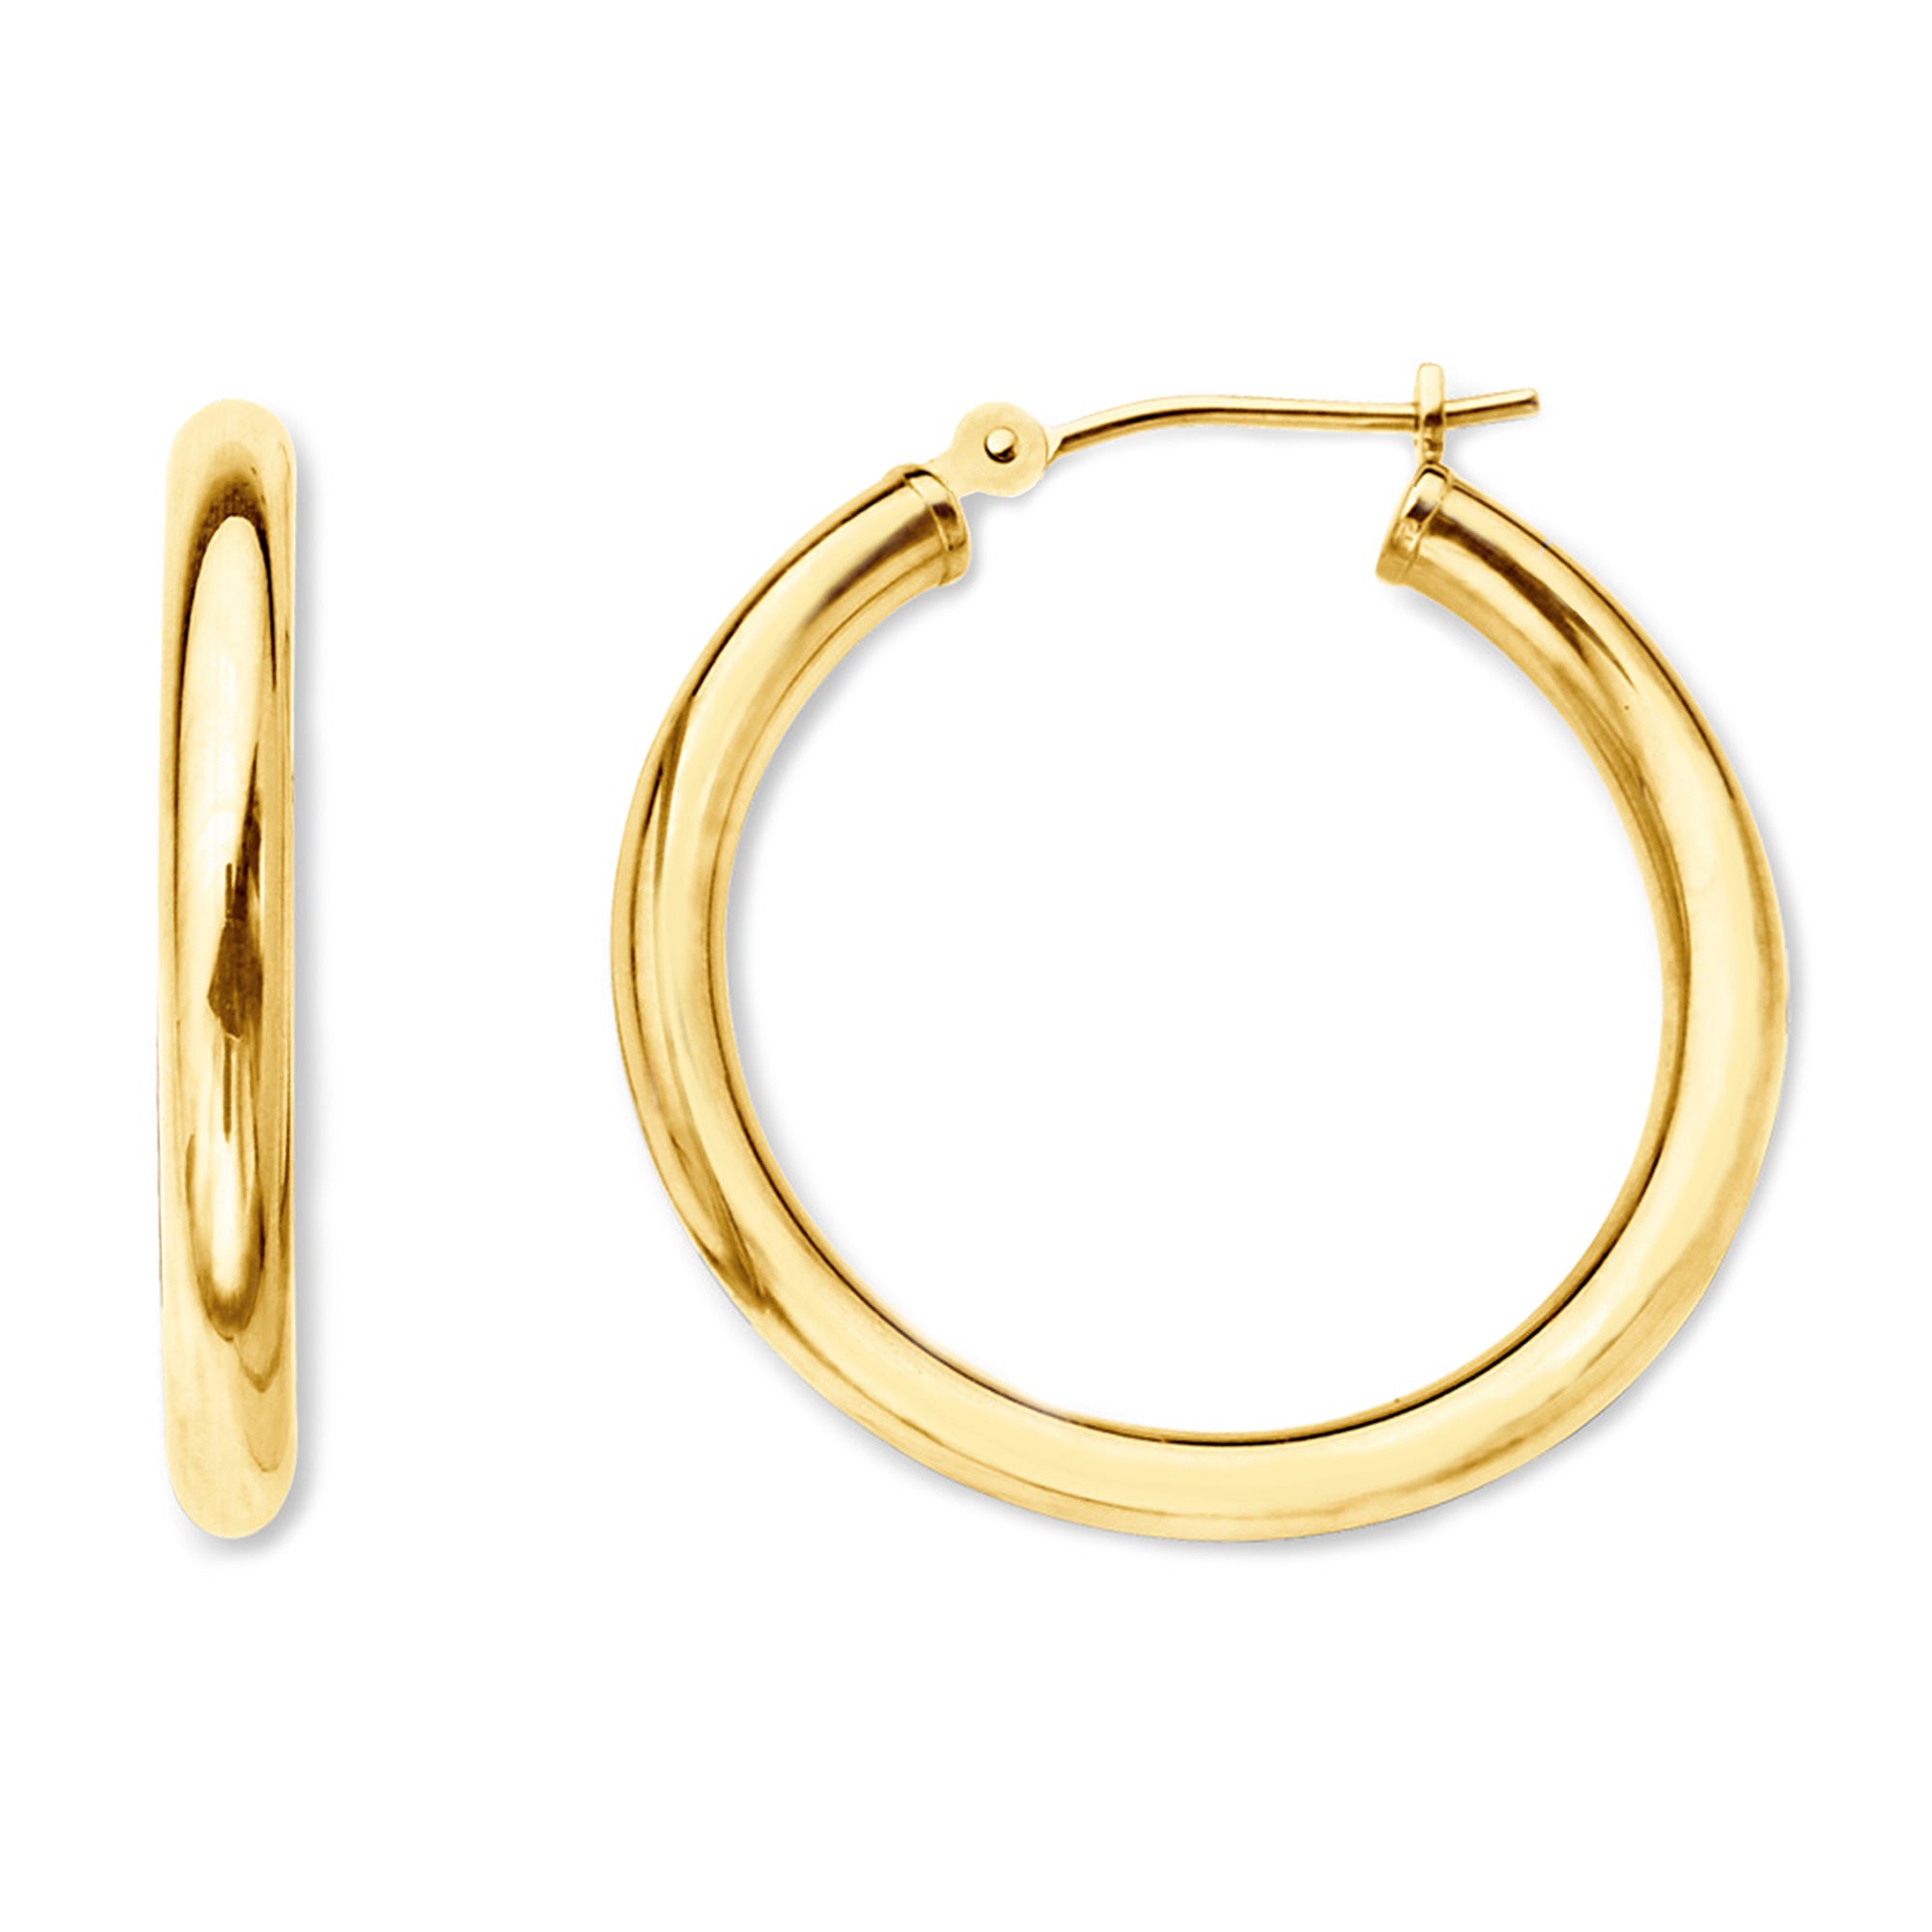 10k gult guld 2 mm glänsande runda rörbågeörhängen fina designersmycken för män och kvinnor